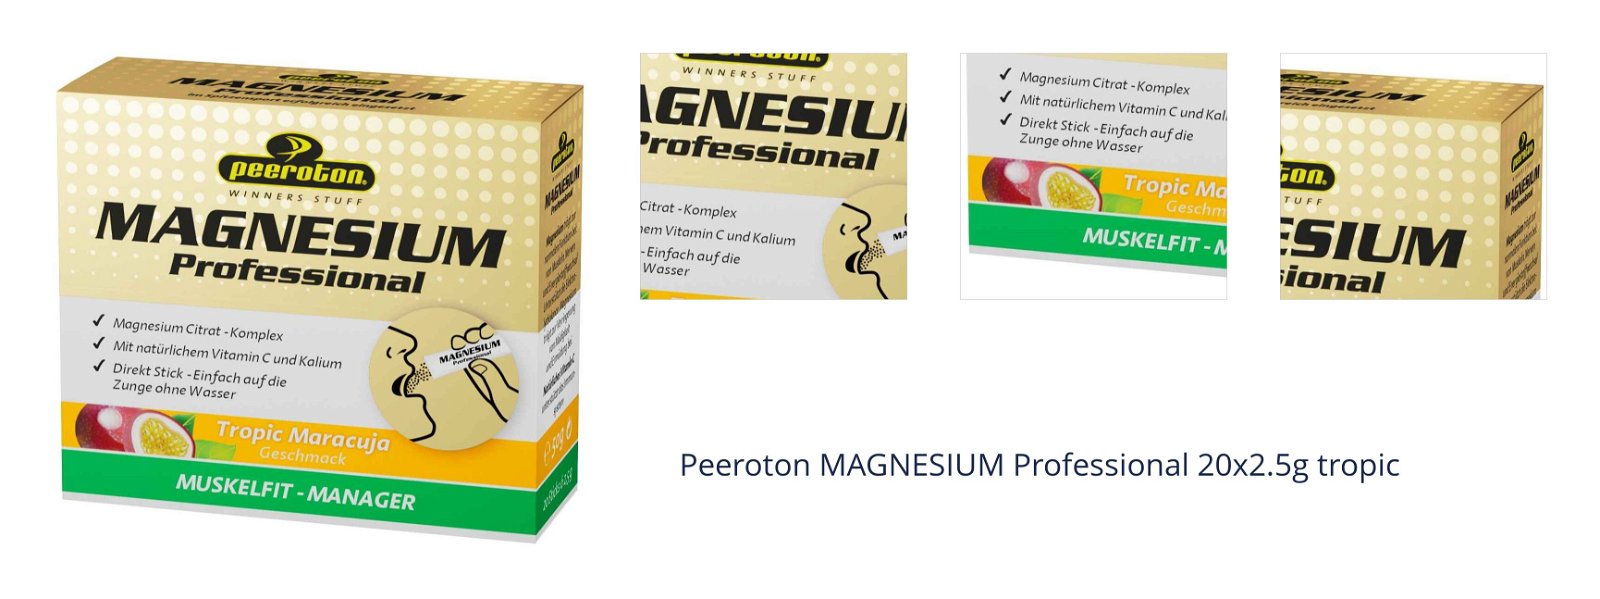 Peeroton MAGNESIUM Professional 20x2.5g tropic 1